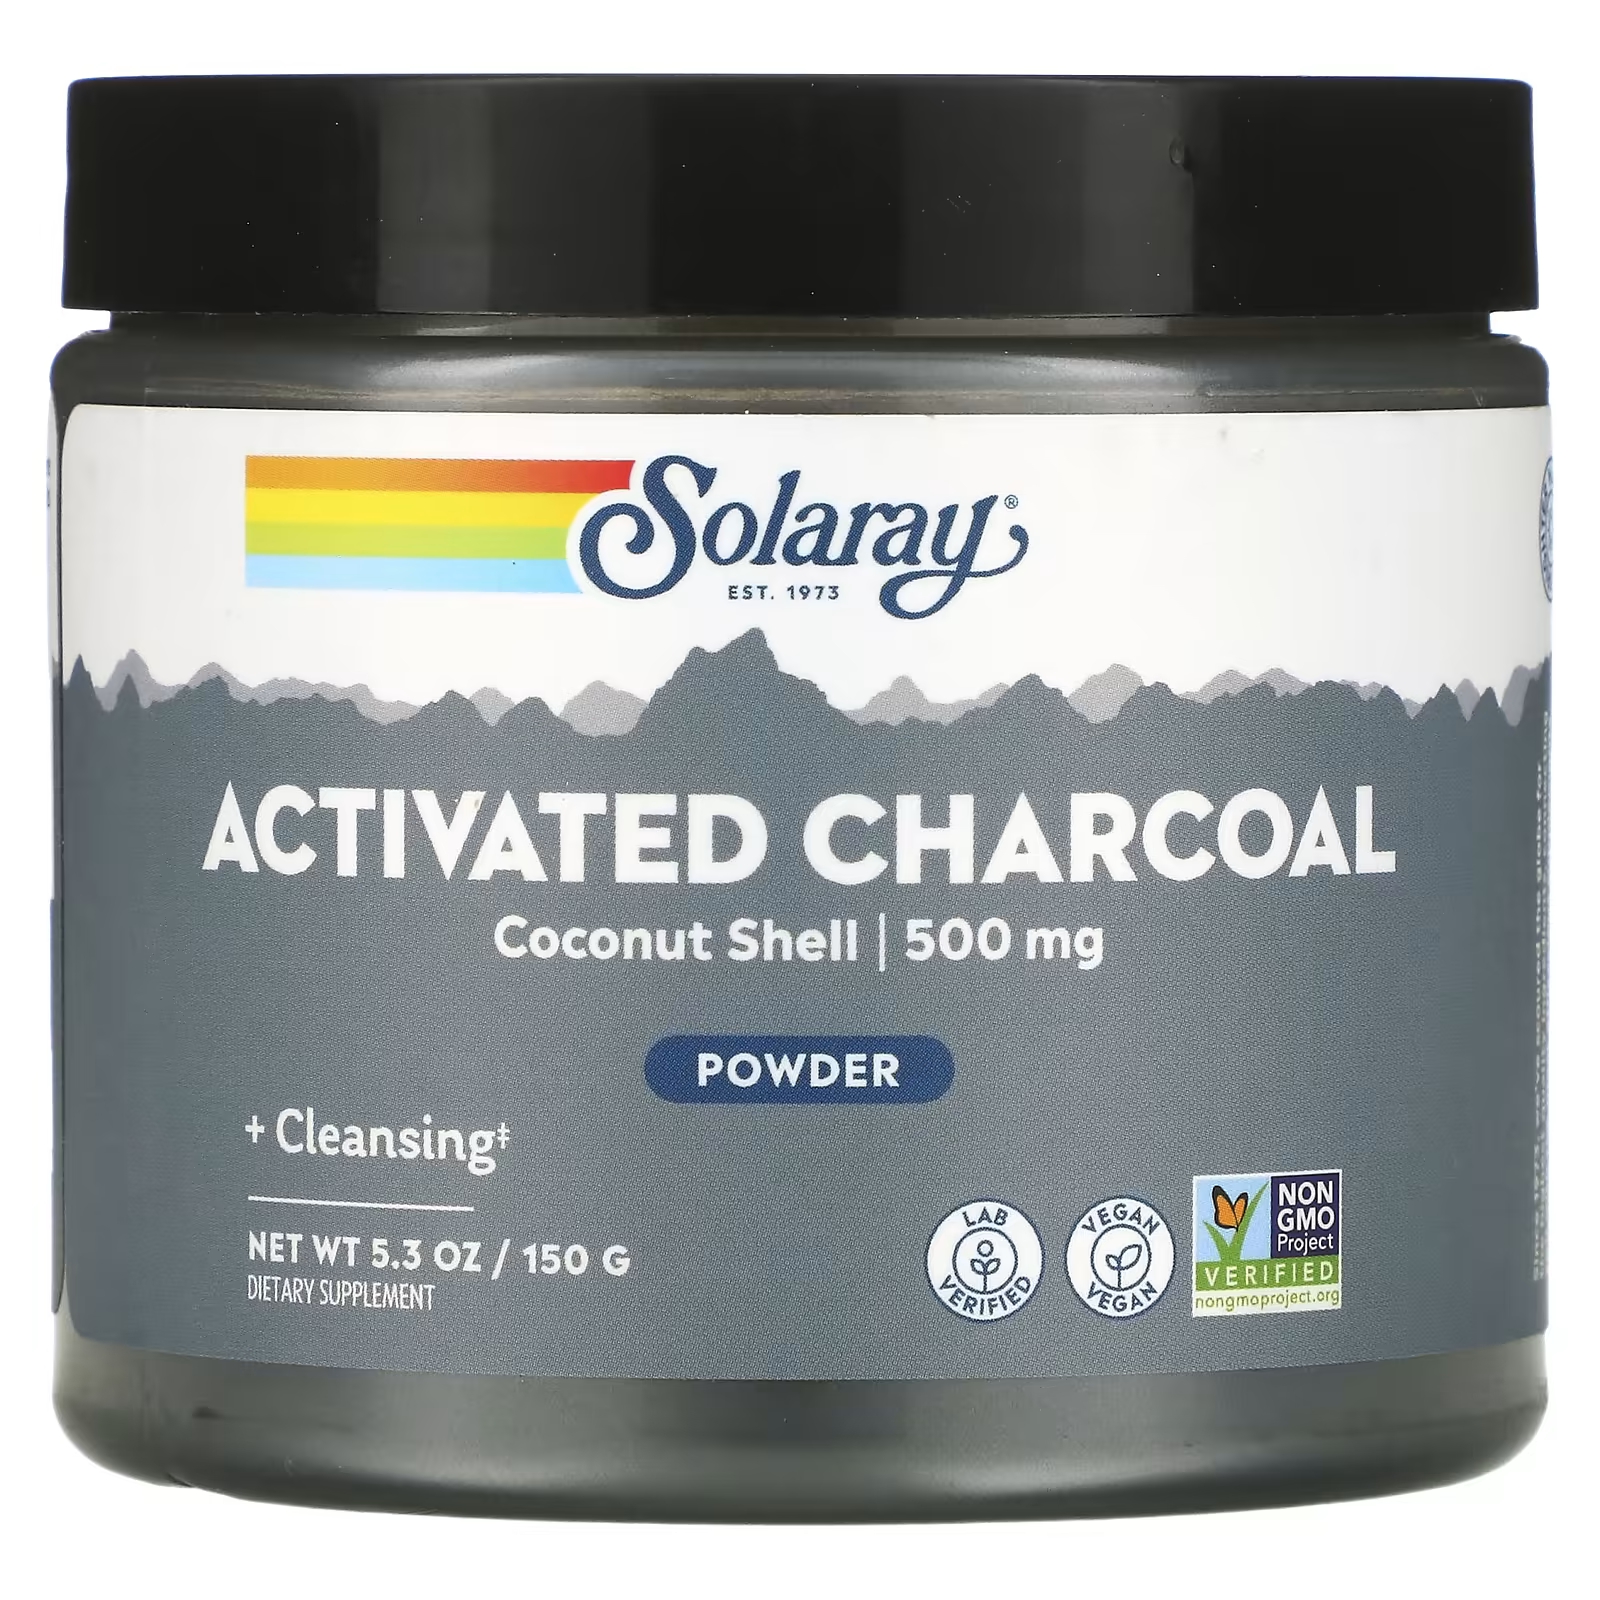 Порошок активированного угля Solaray, 150 г кокосовая скорлупа активированного угля 1 кг 1000 г